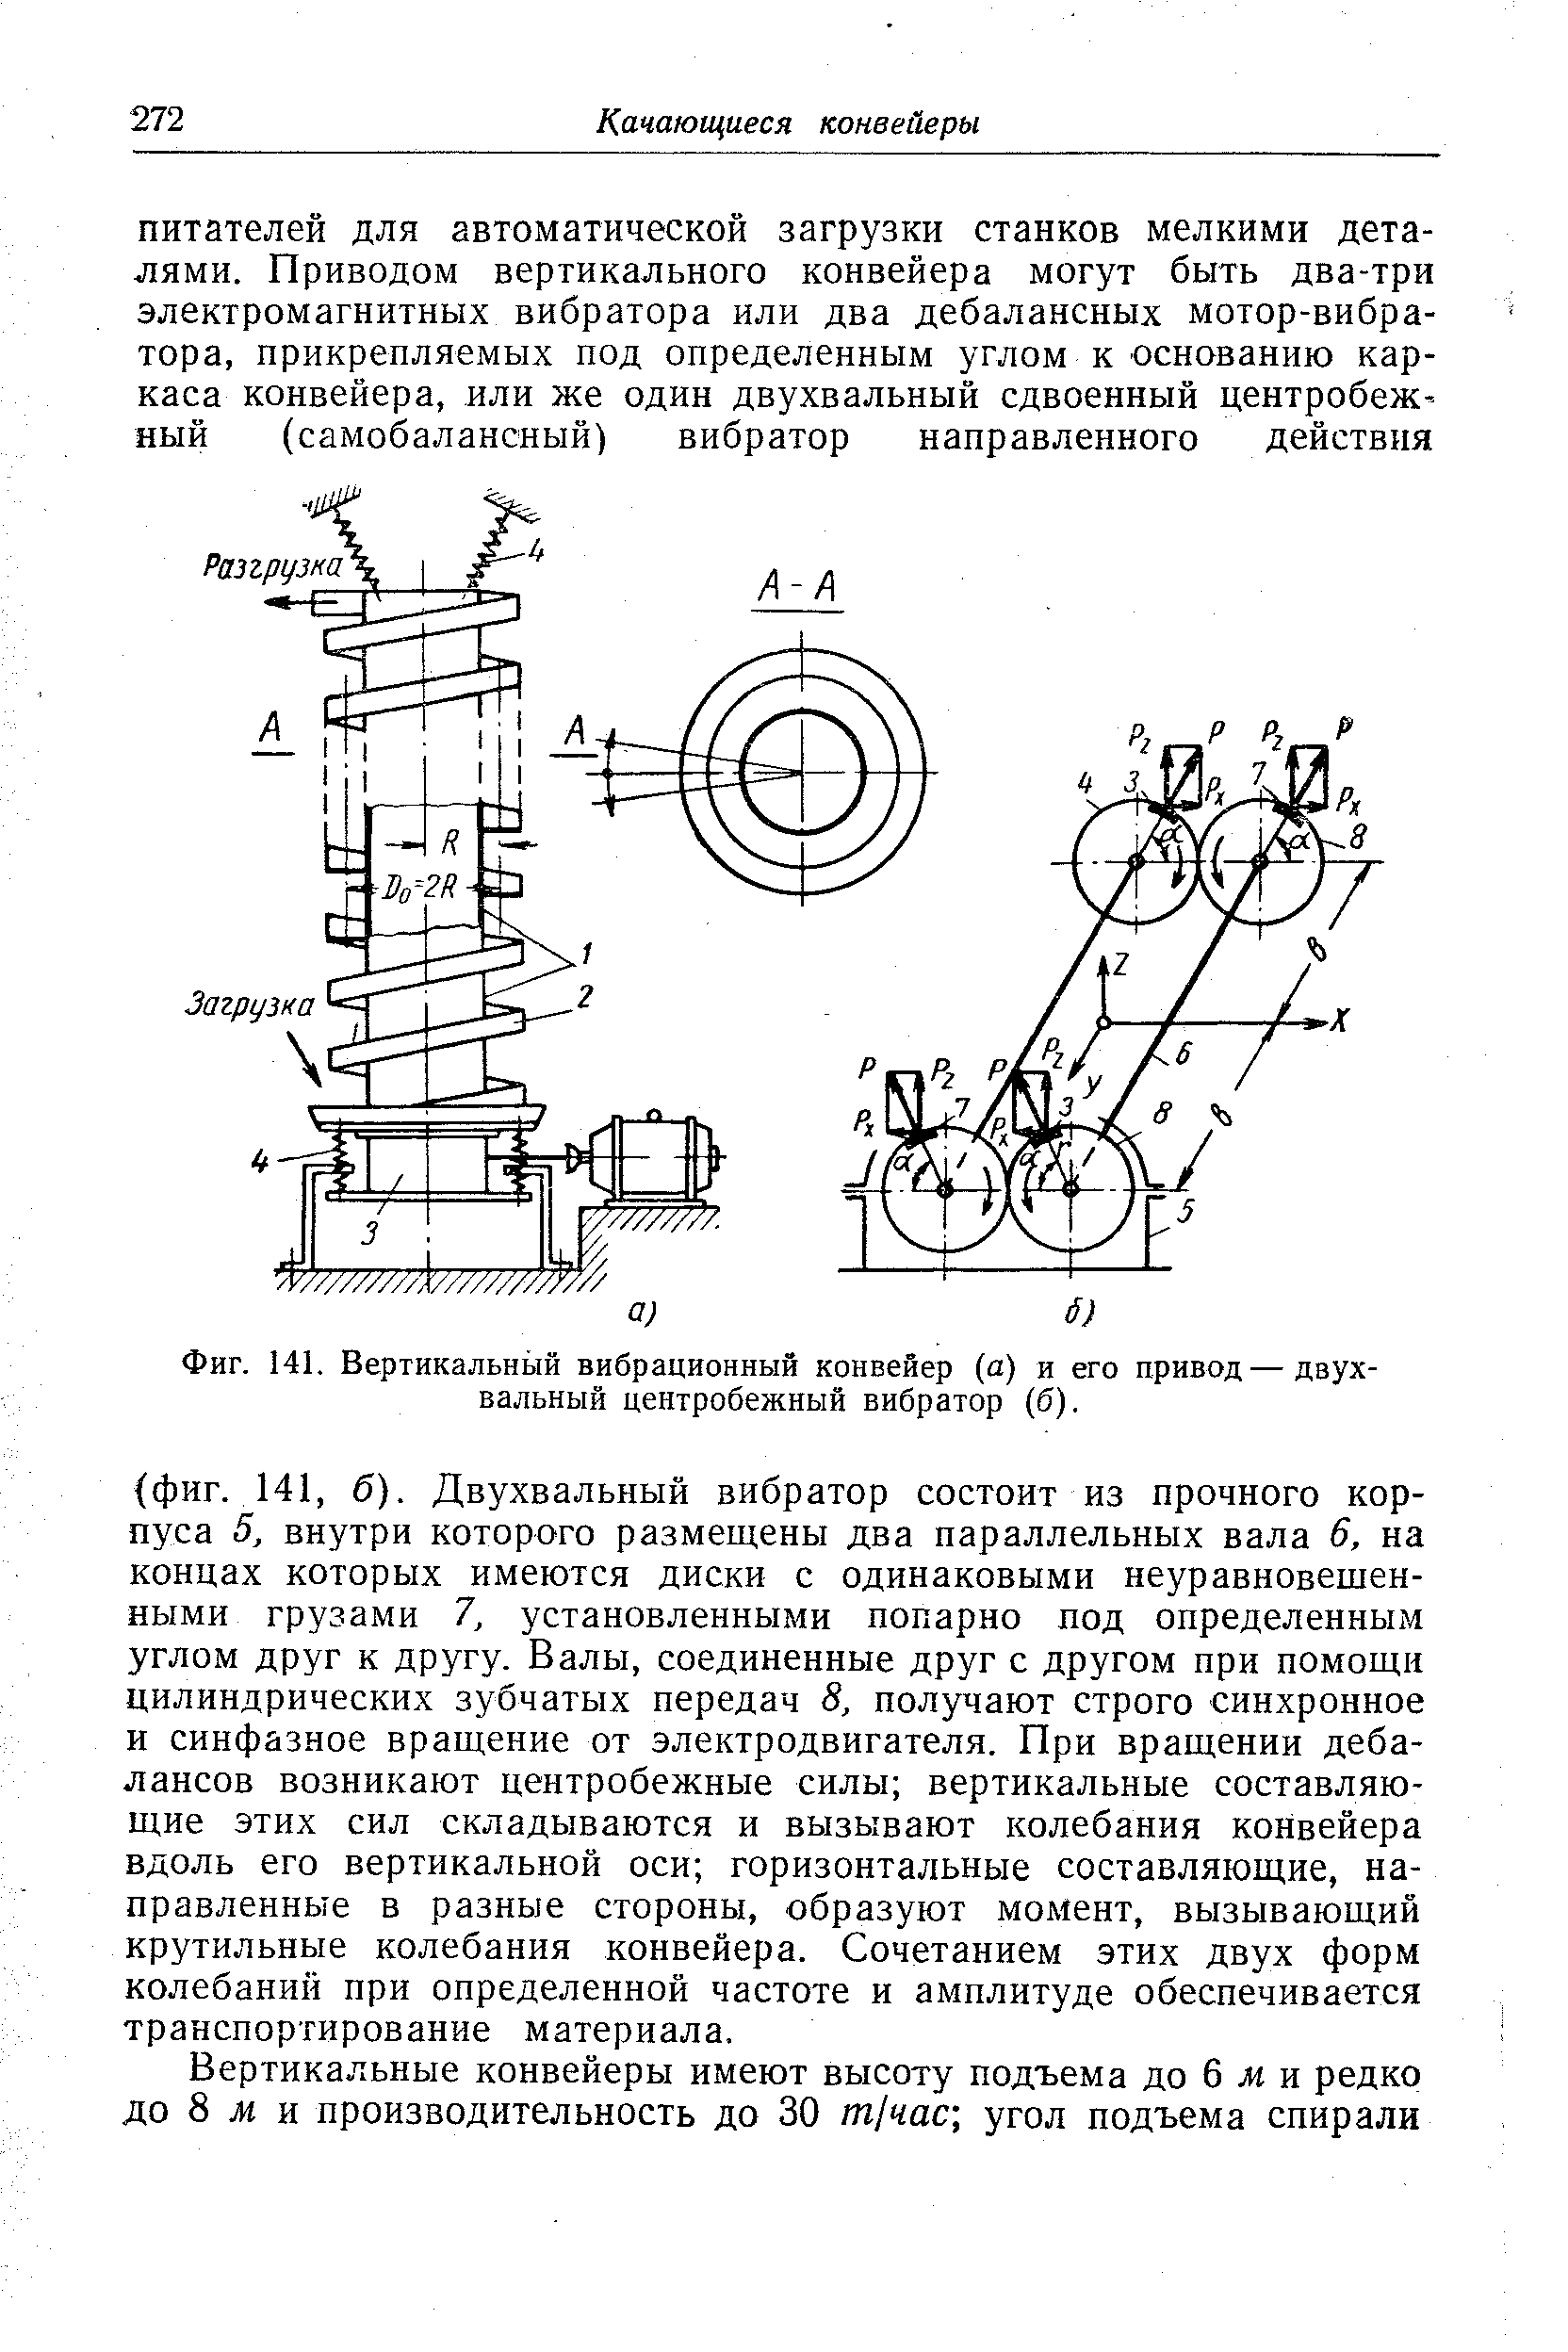 Фиг. 141. Вертикальный вибрационный конвейер (а) и его привод—двухвальный центробежный вибратор (б).
